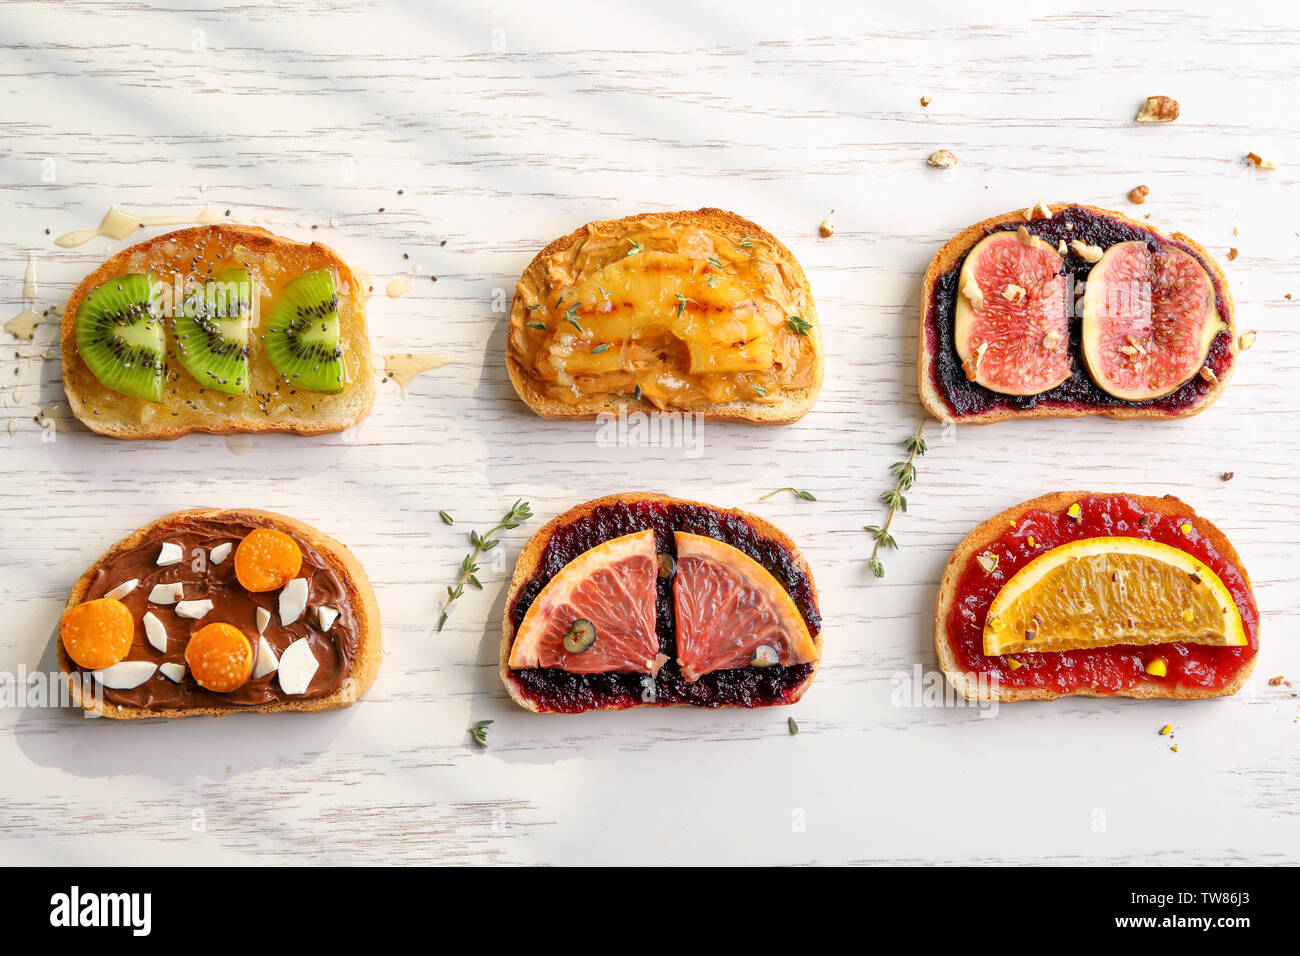 Scheiben Brot mit verschiedenen Toppings auf hellen Hintergrund Stockfoto